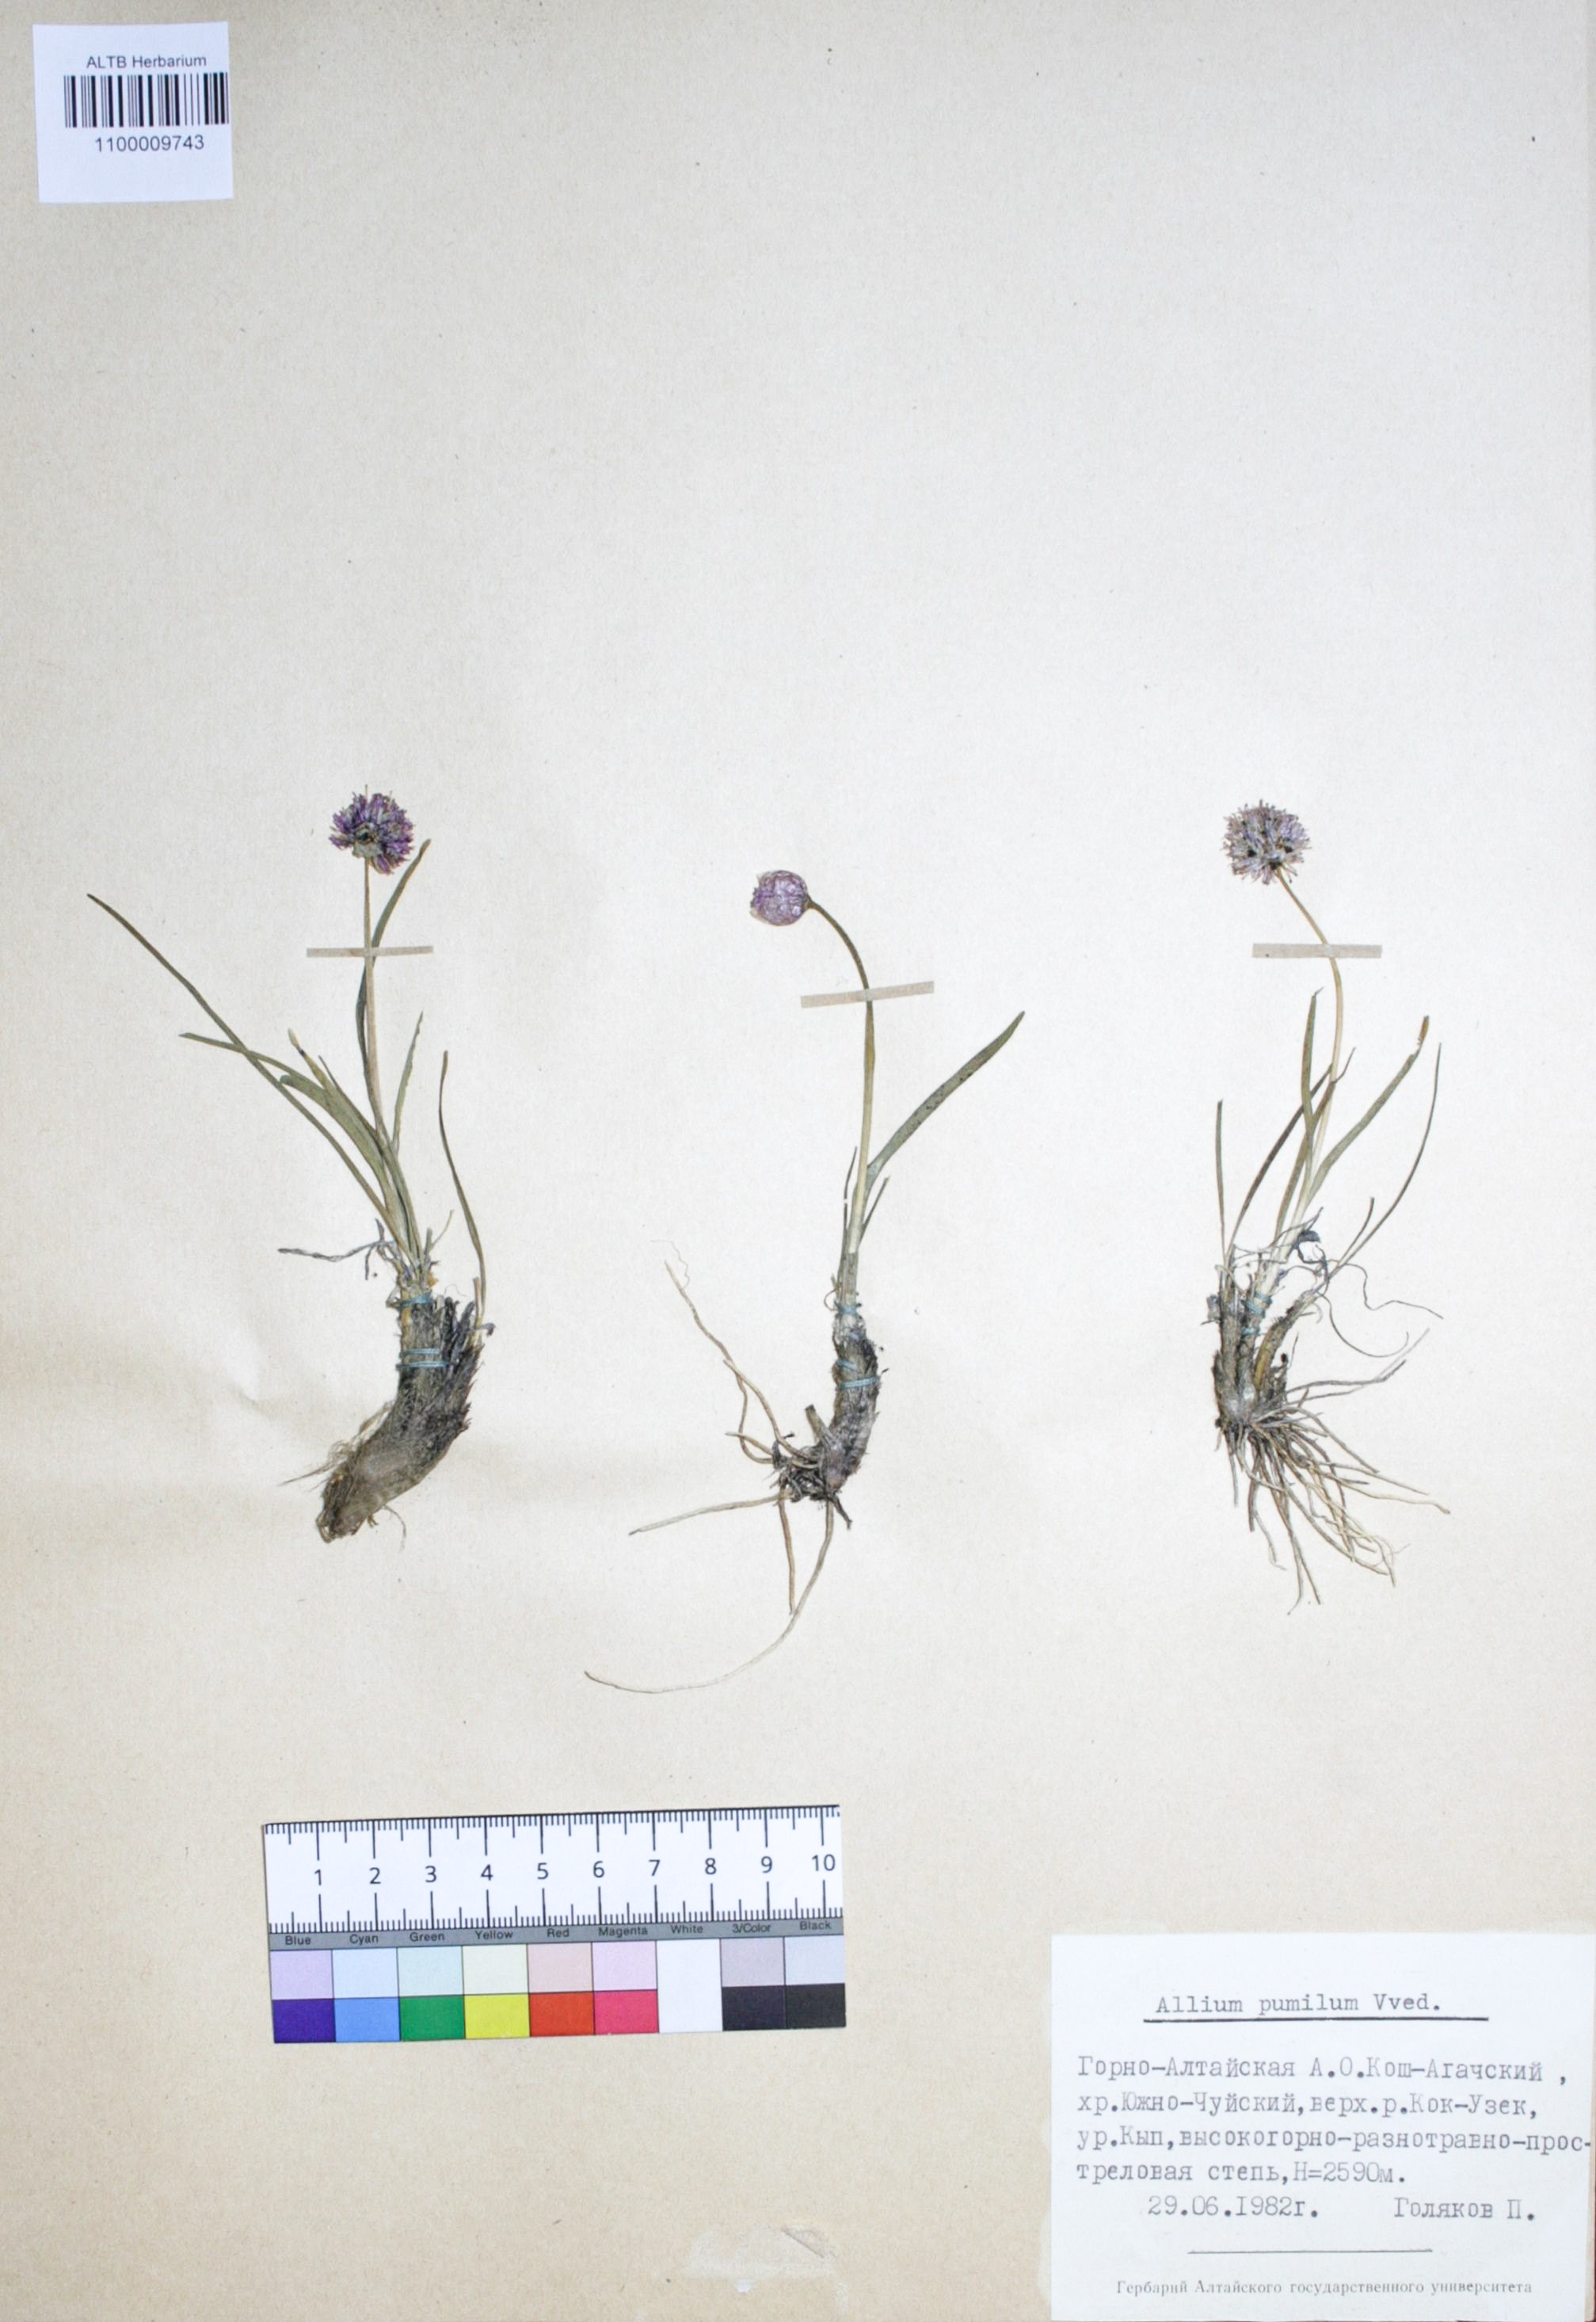 Allium pumilum Vved.